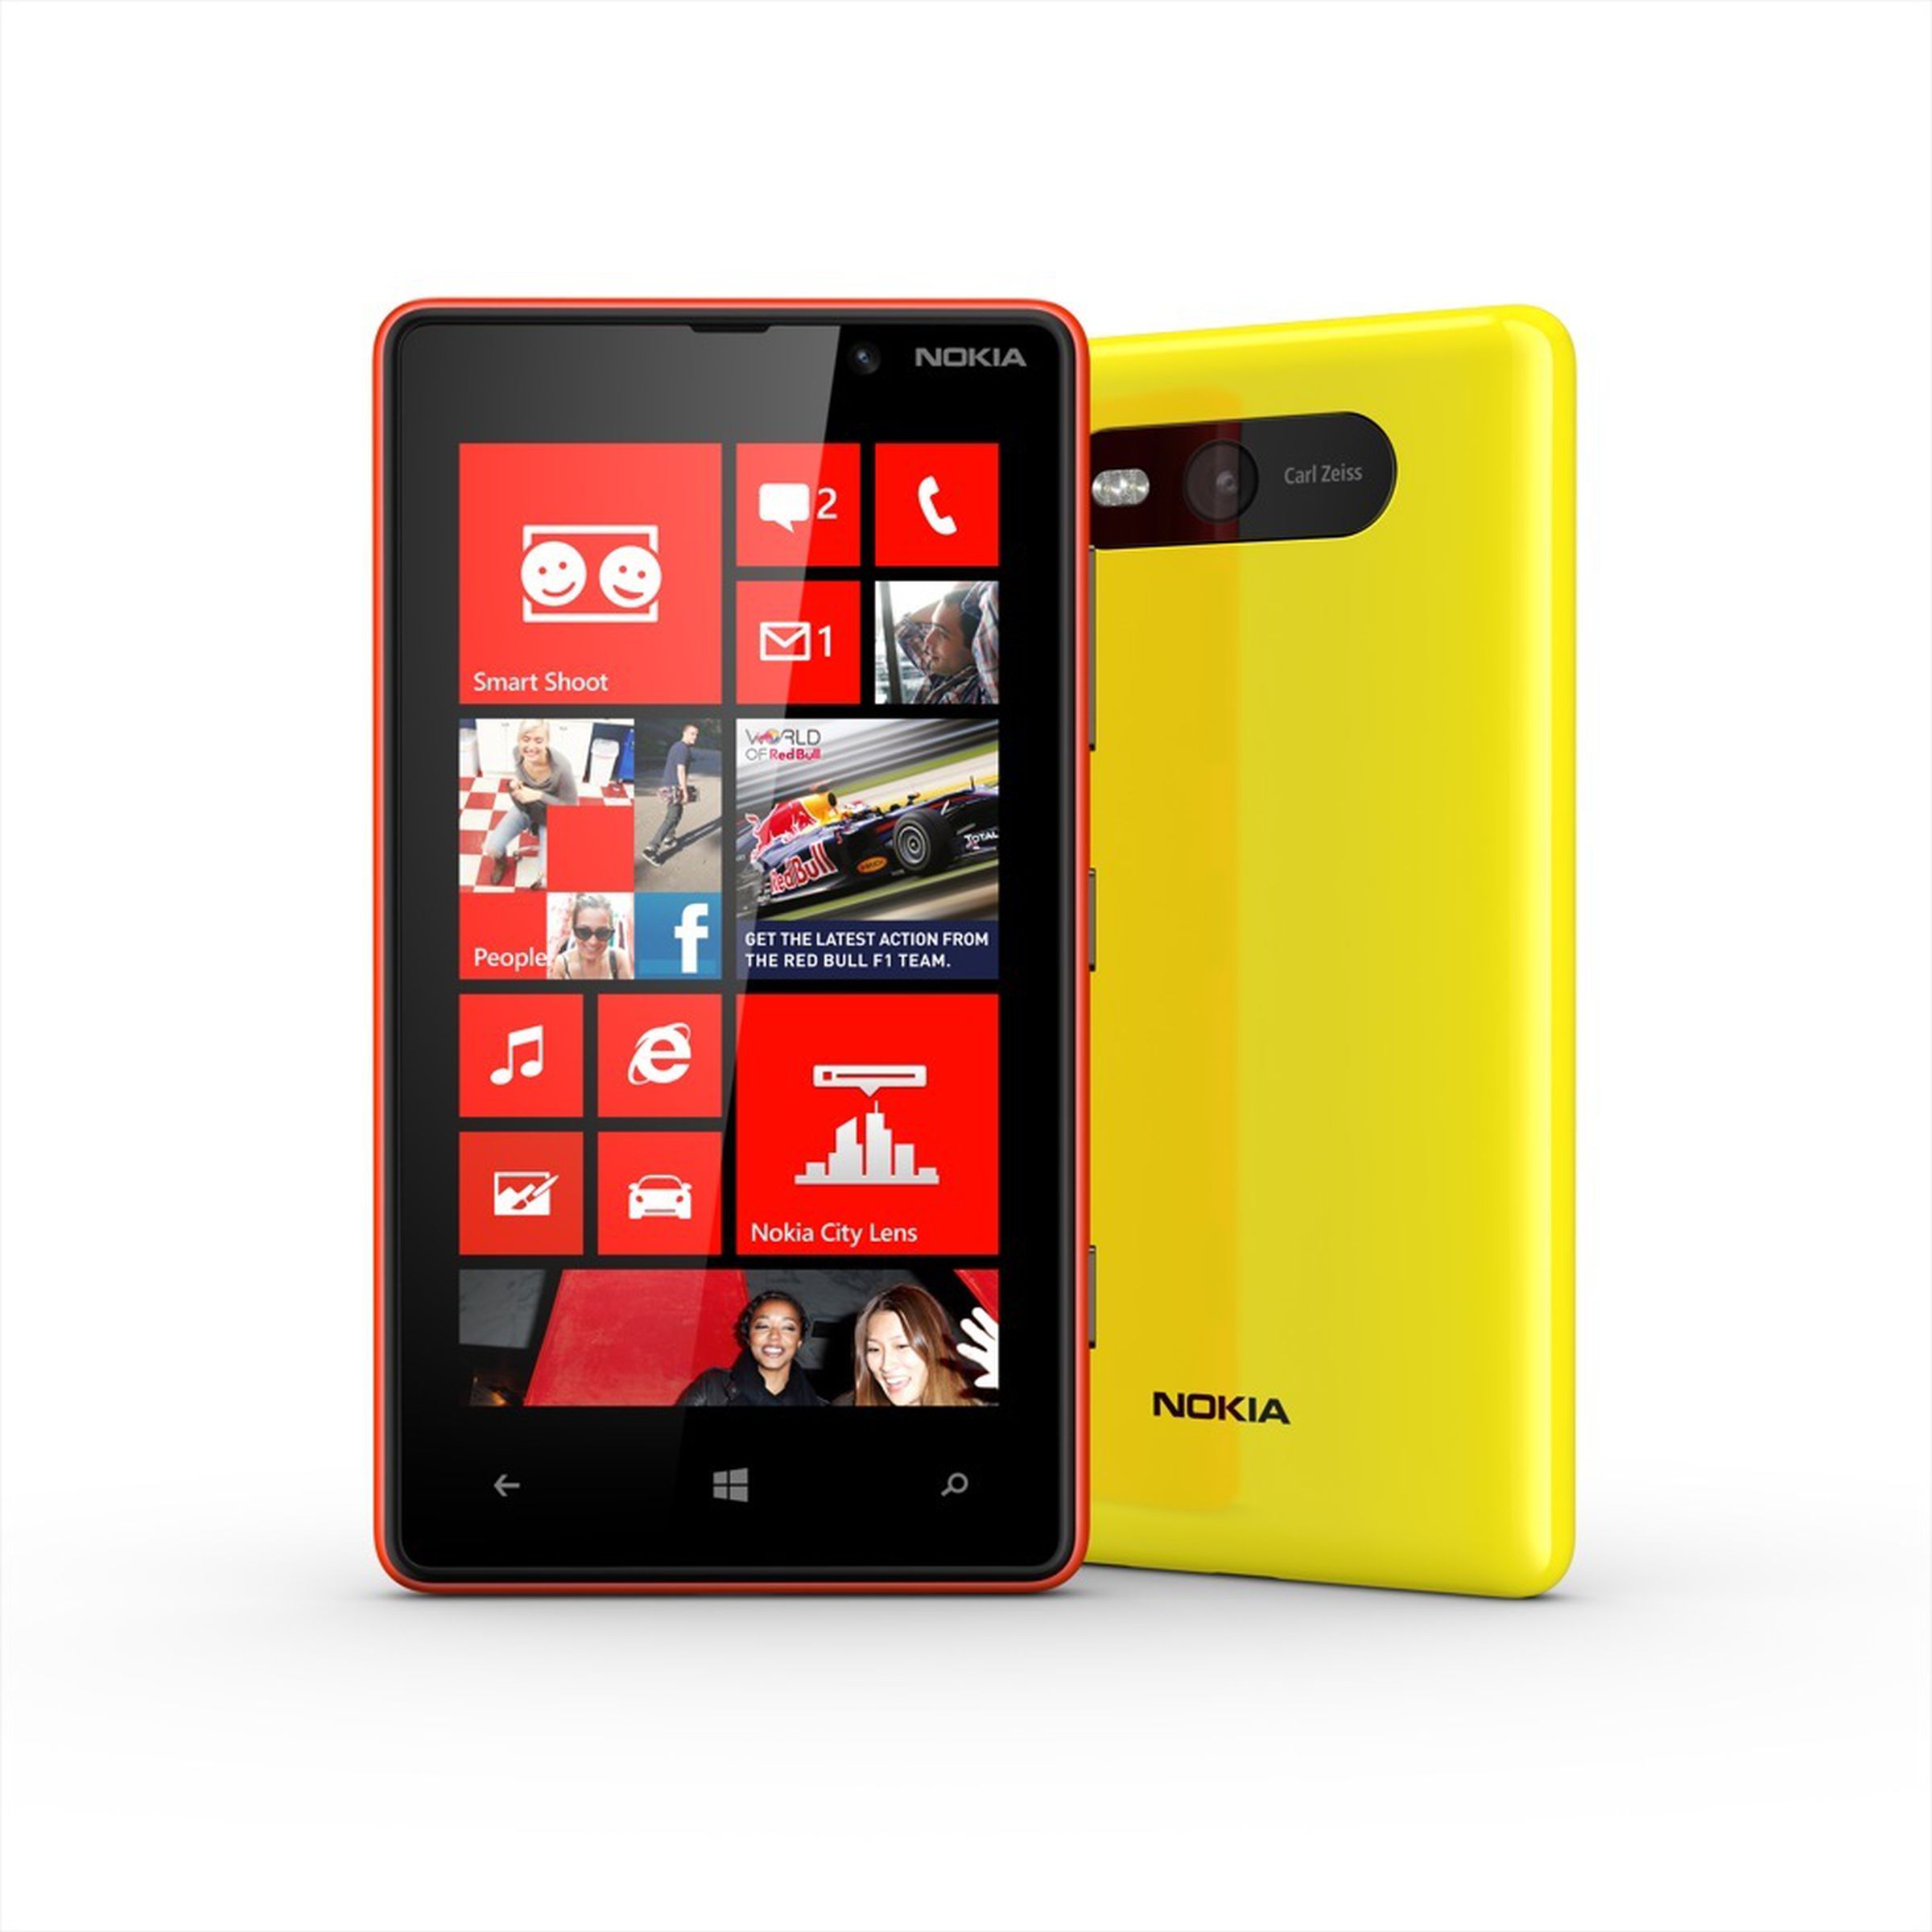 Nokia Lumia 820 press pictures